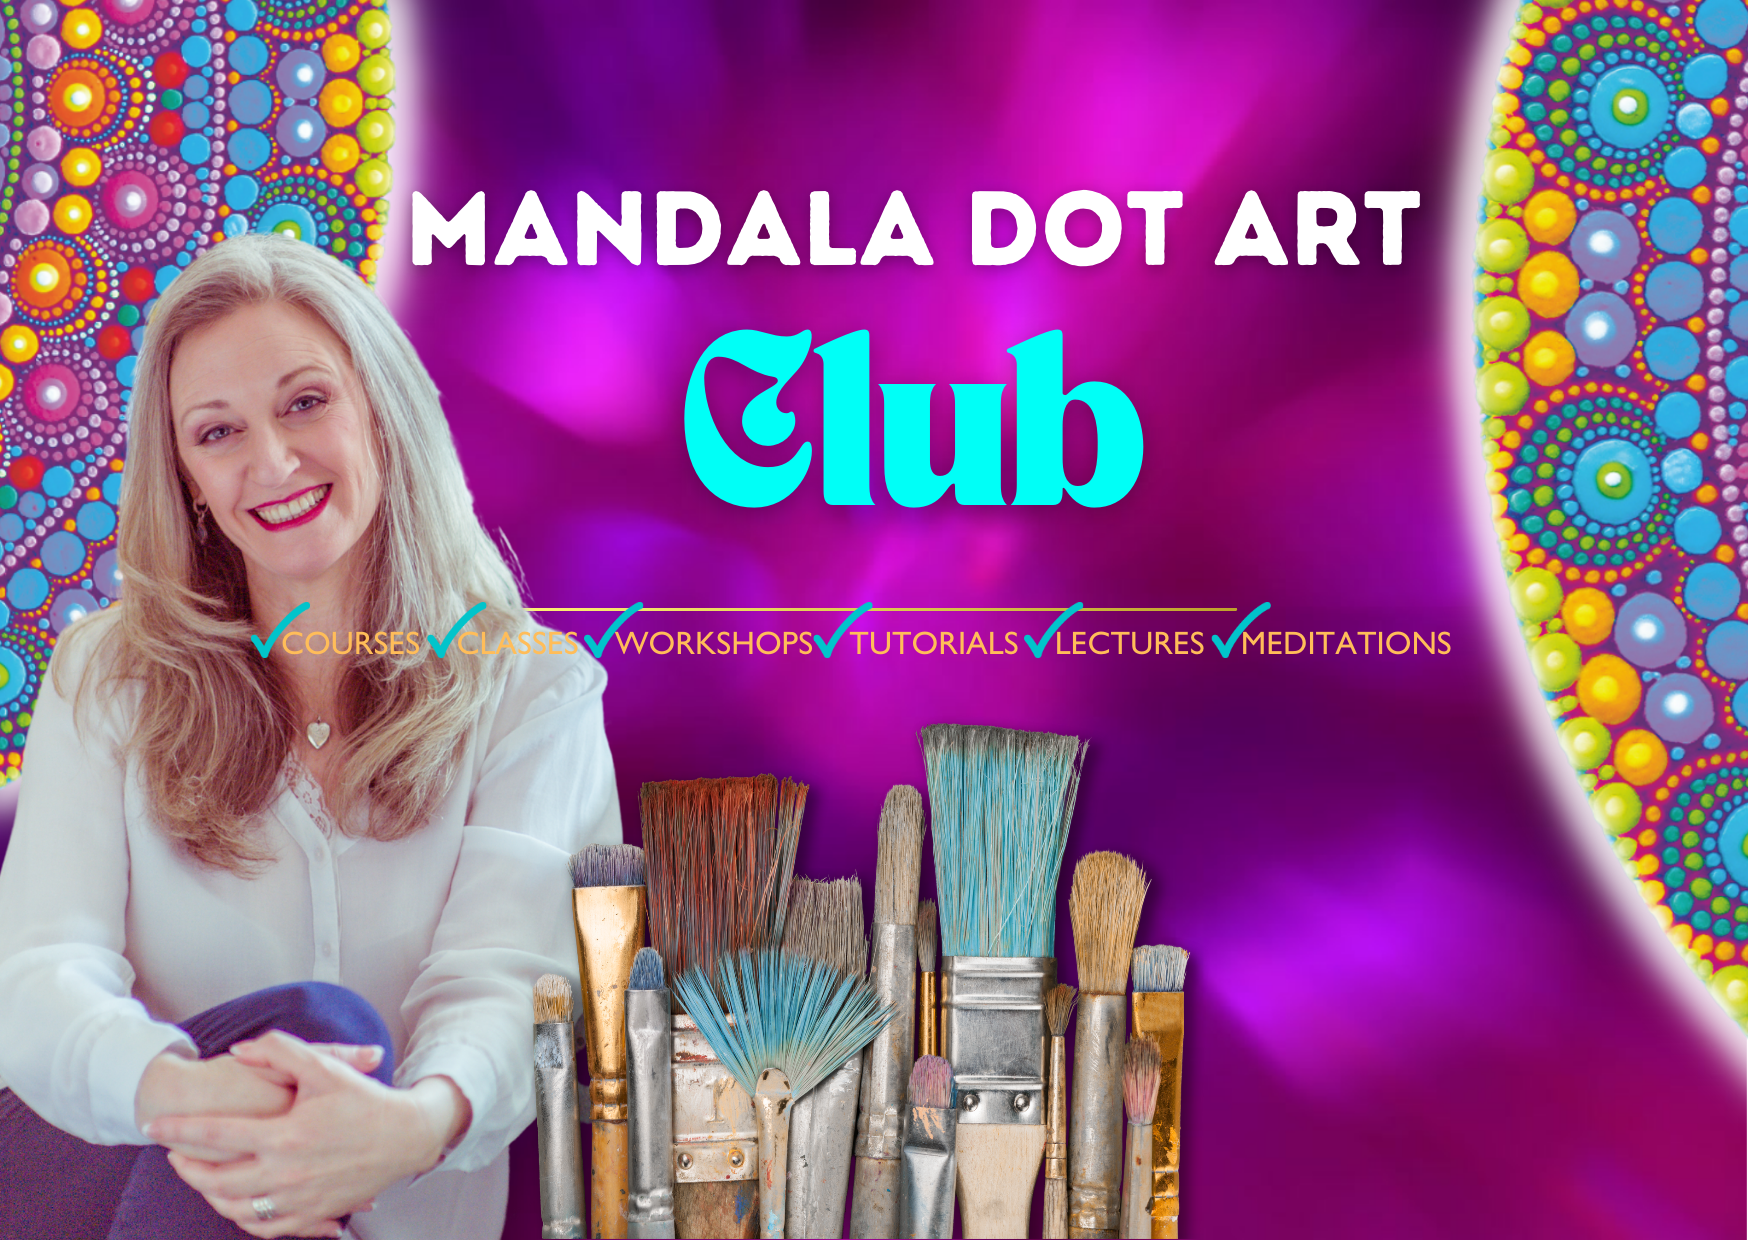 Mandala Dot Art Club 